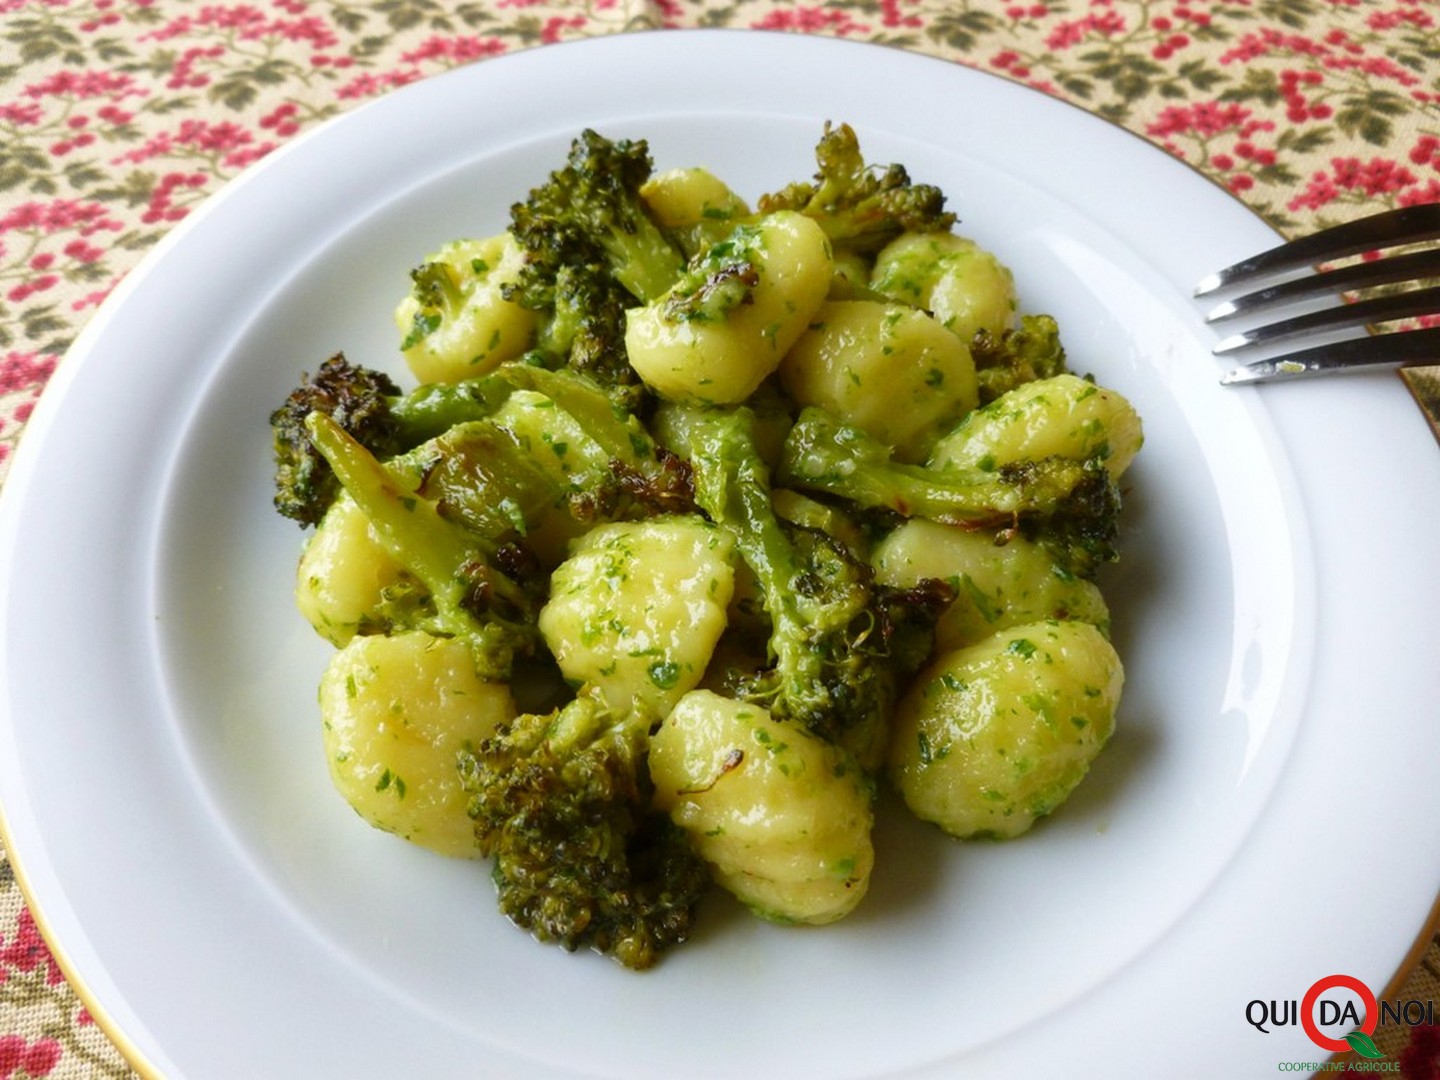 Gnocchi con crema di broccoli - Grassi M.A (1)